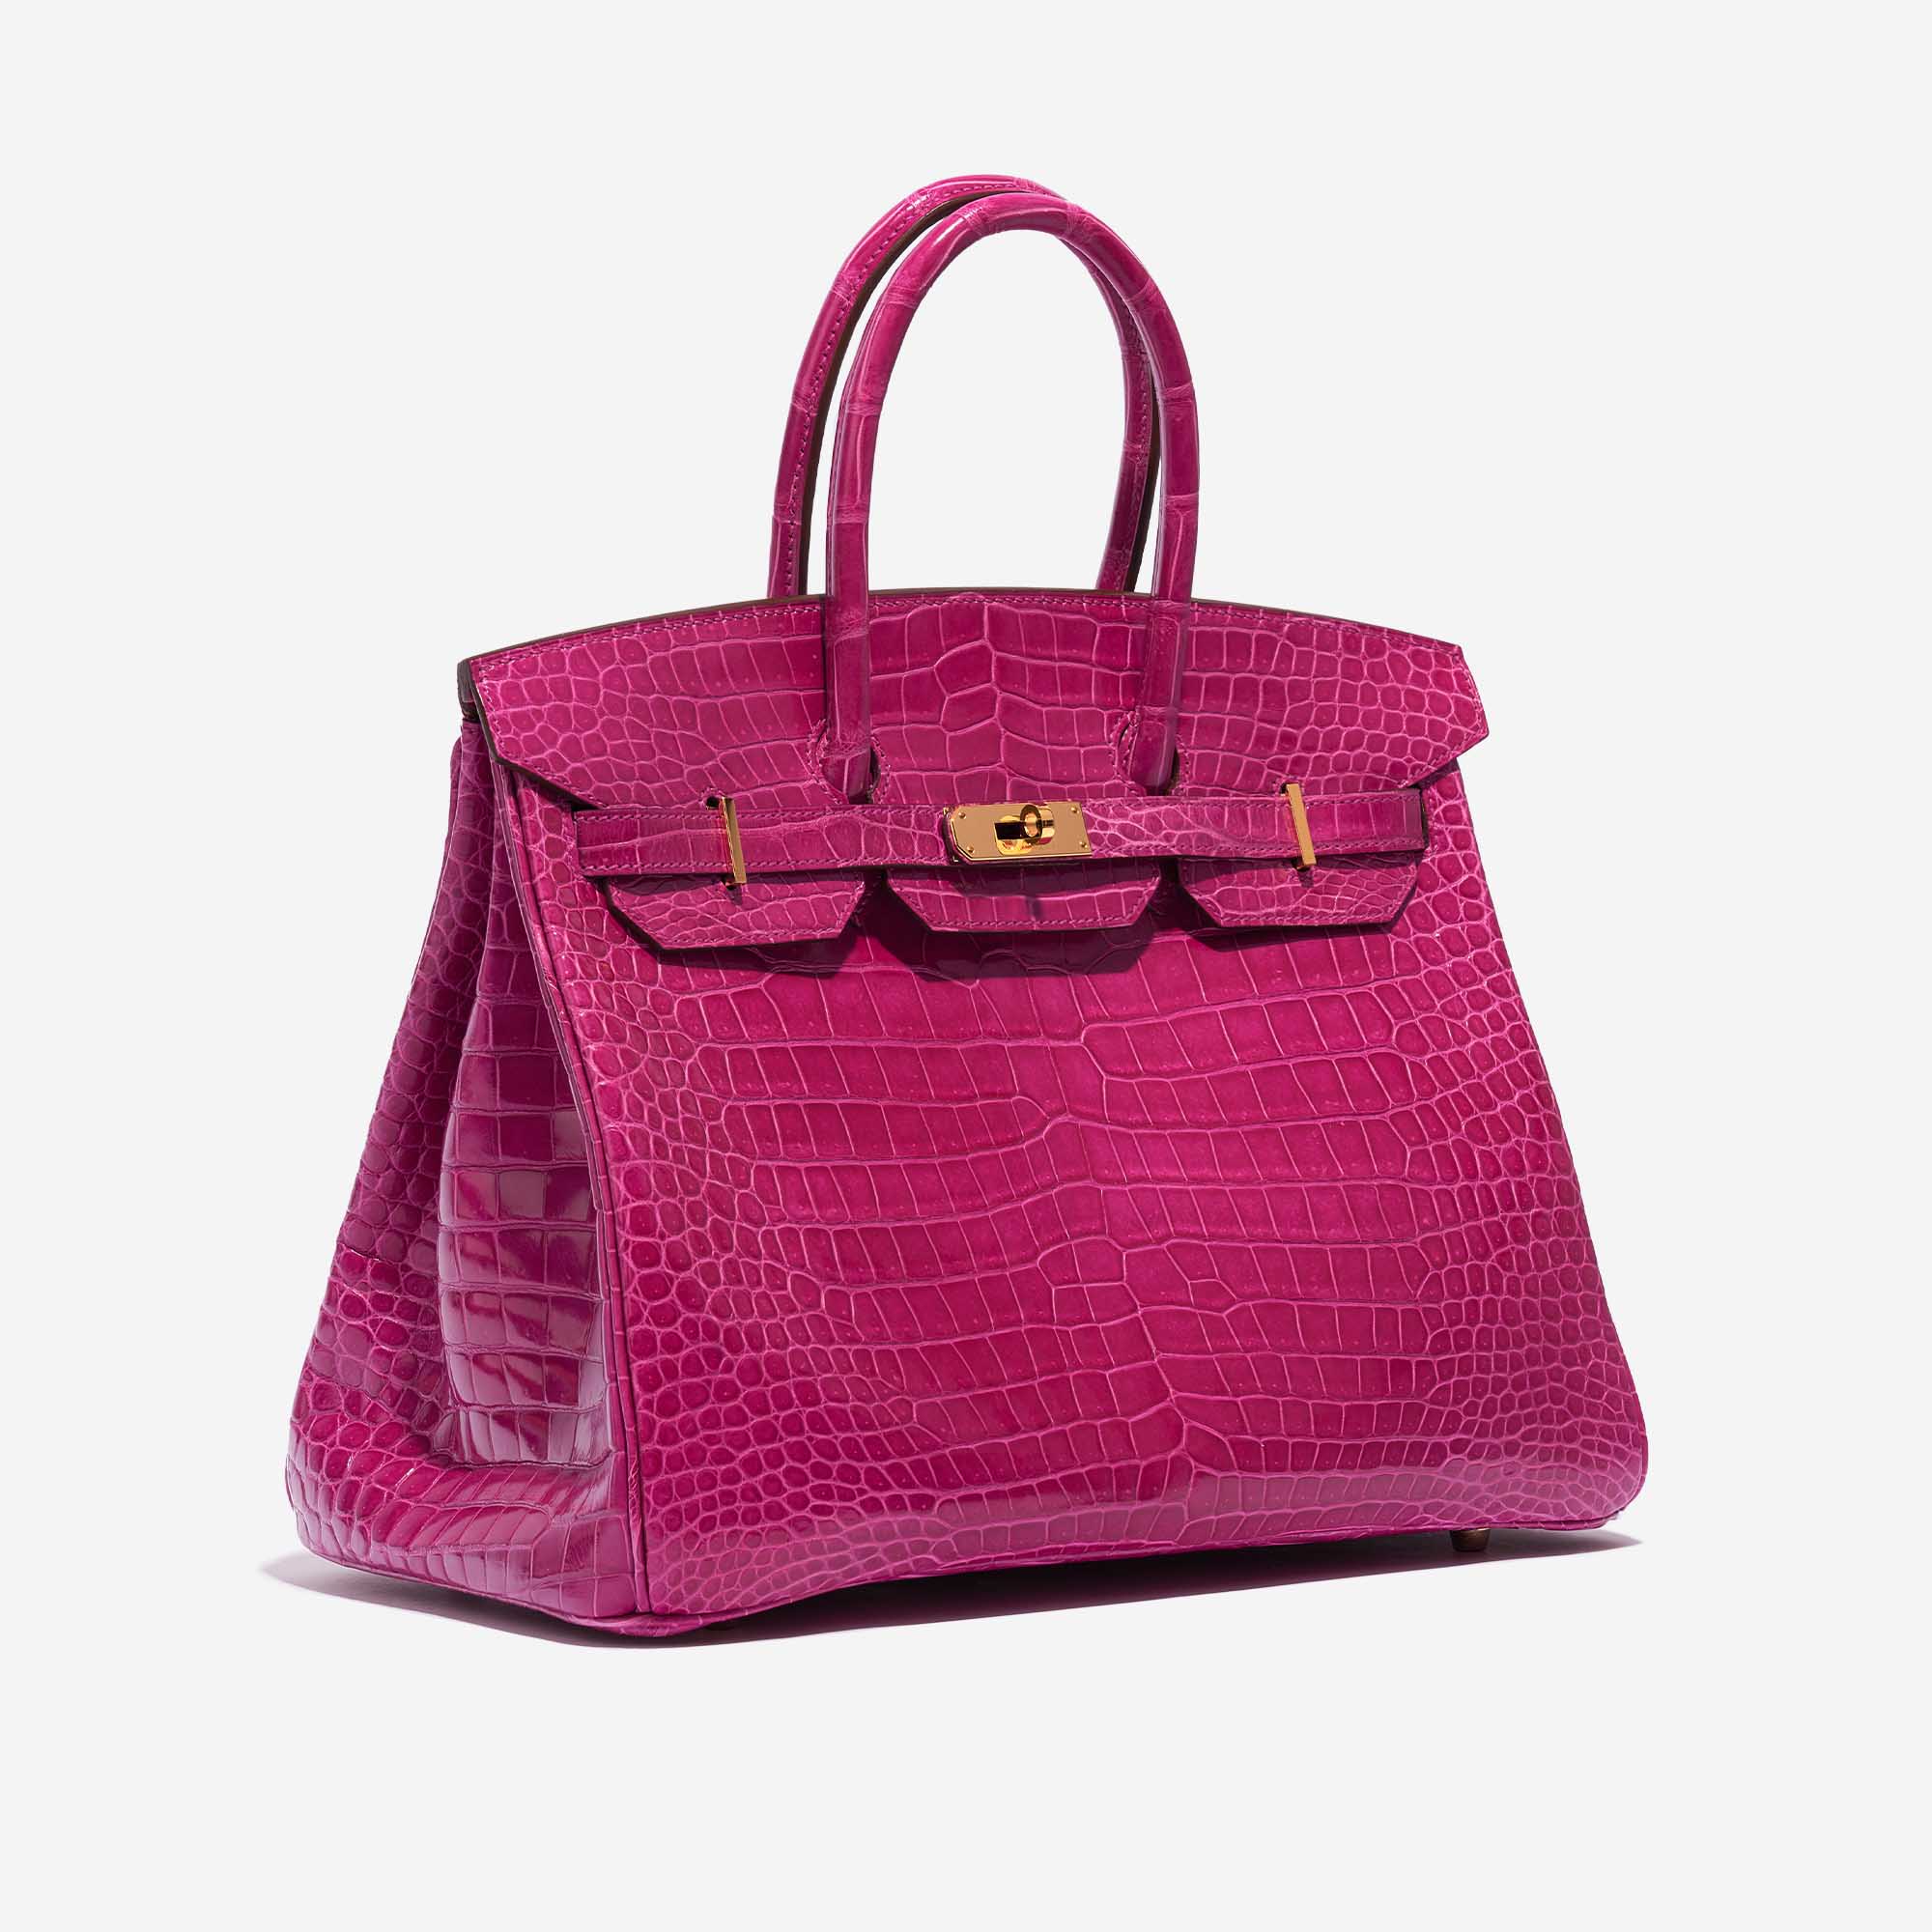 Pre-owned Hermès Tasche Birkin 35 Porosus Crocodile Rose Scheherazade Pink Side Front | Verkaufen Sie Ihre Designer-Tasche auf Saclab.com